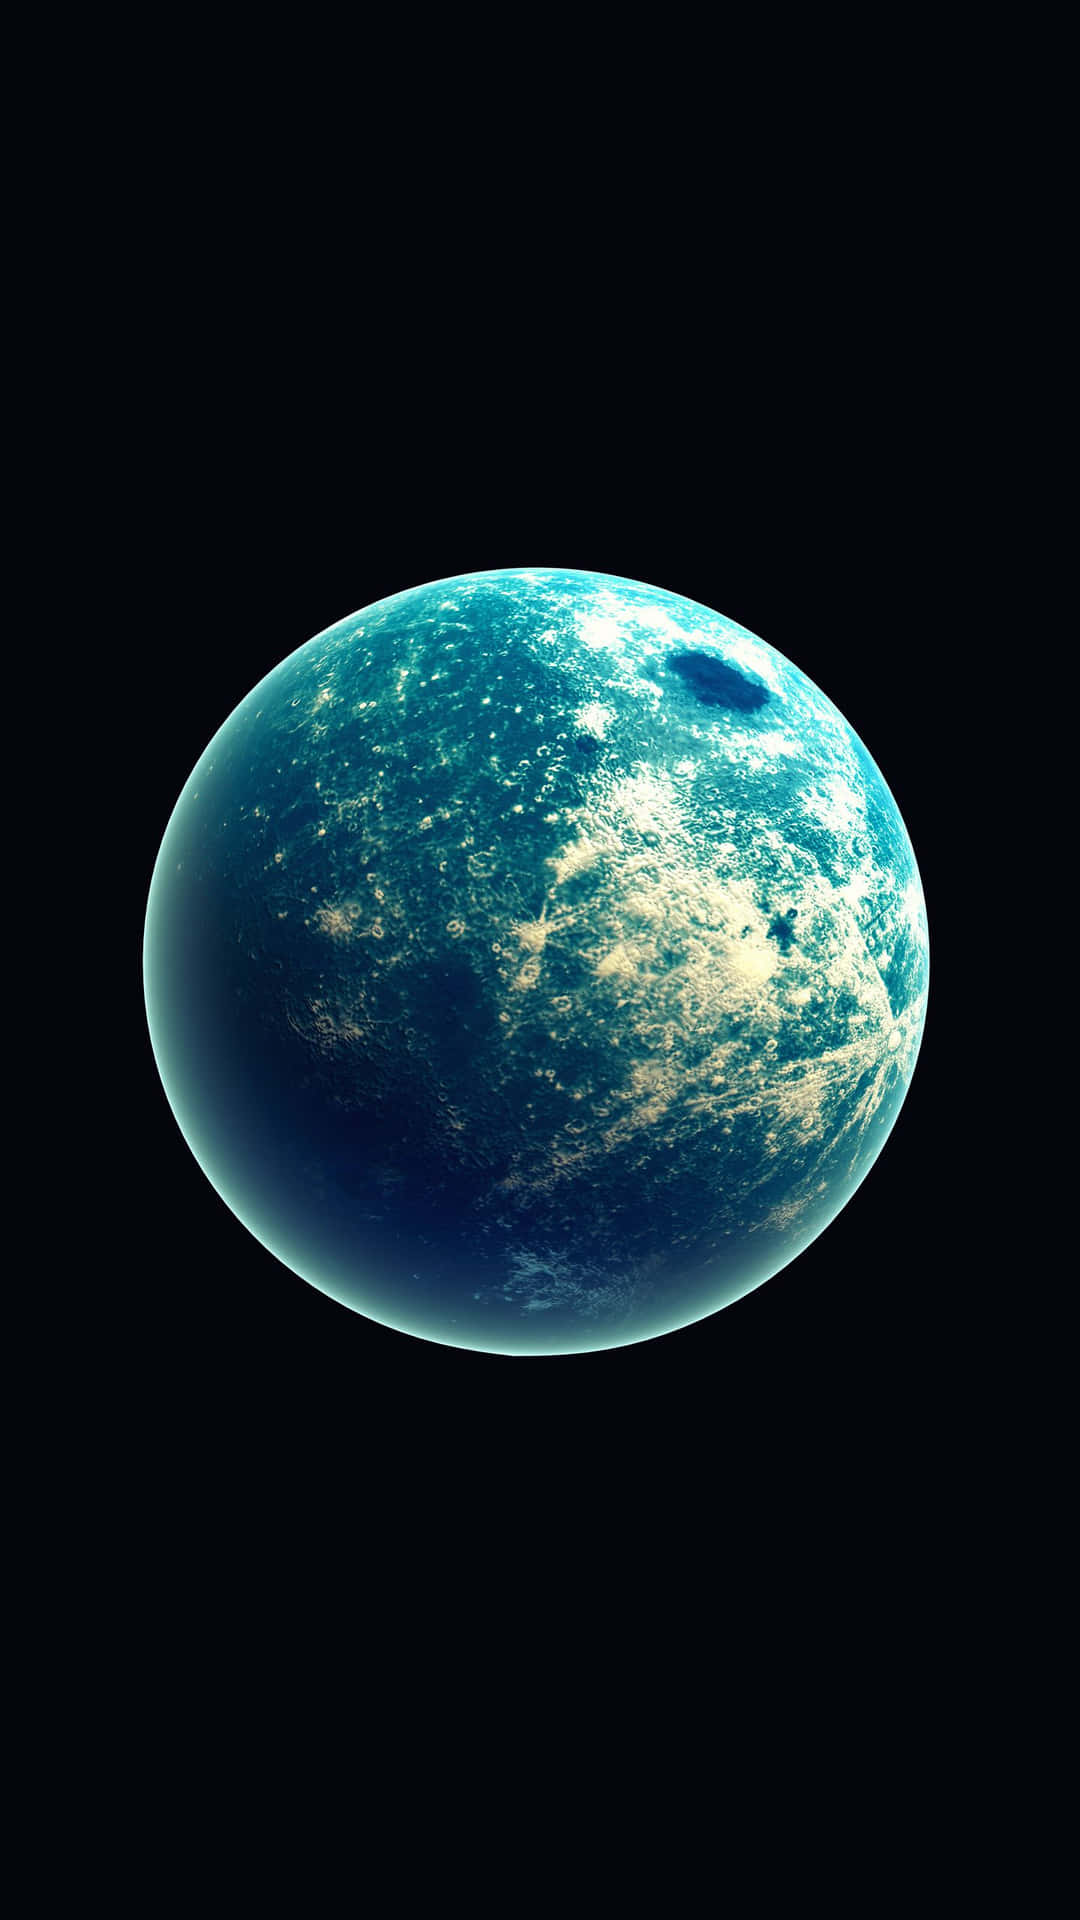 Planetaamoled Azul Em Preto. Papel de Parede